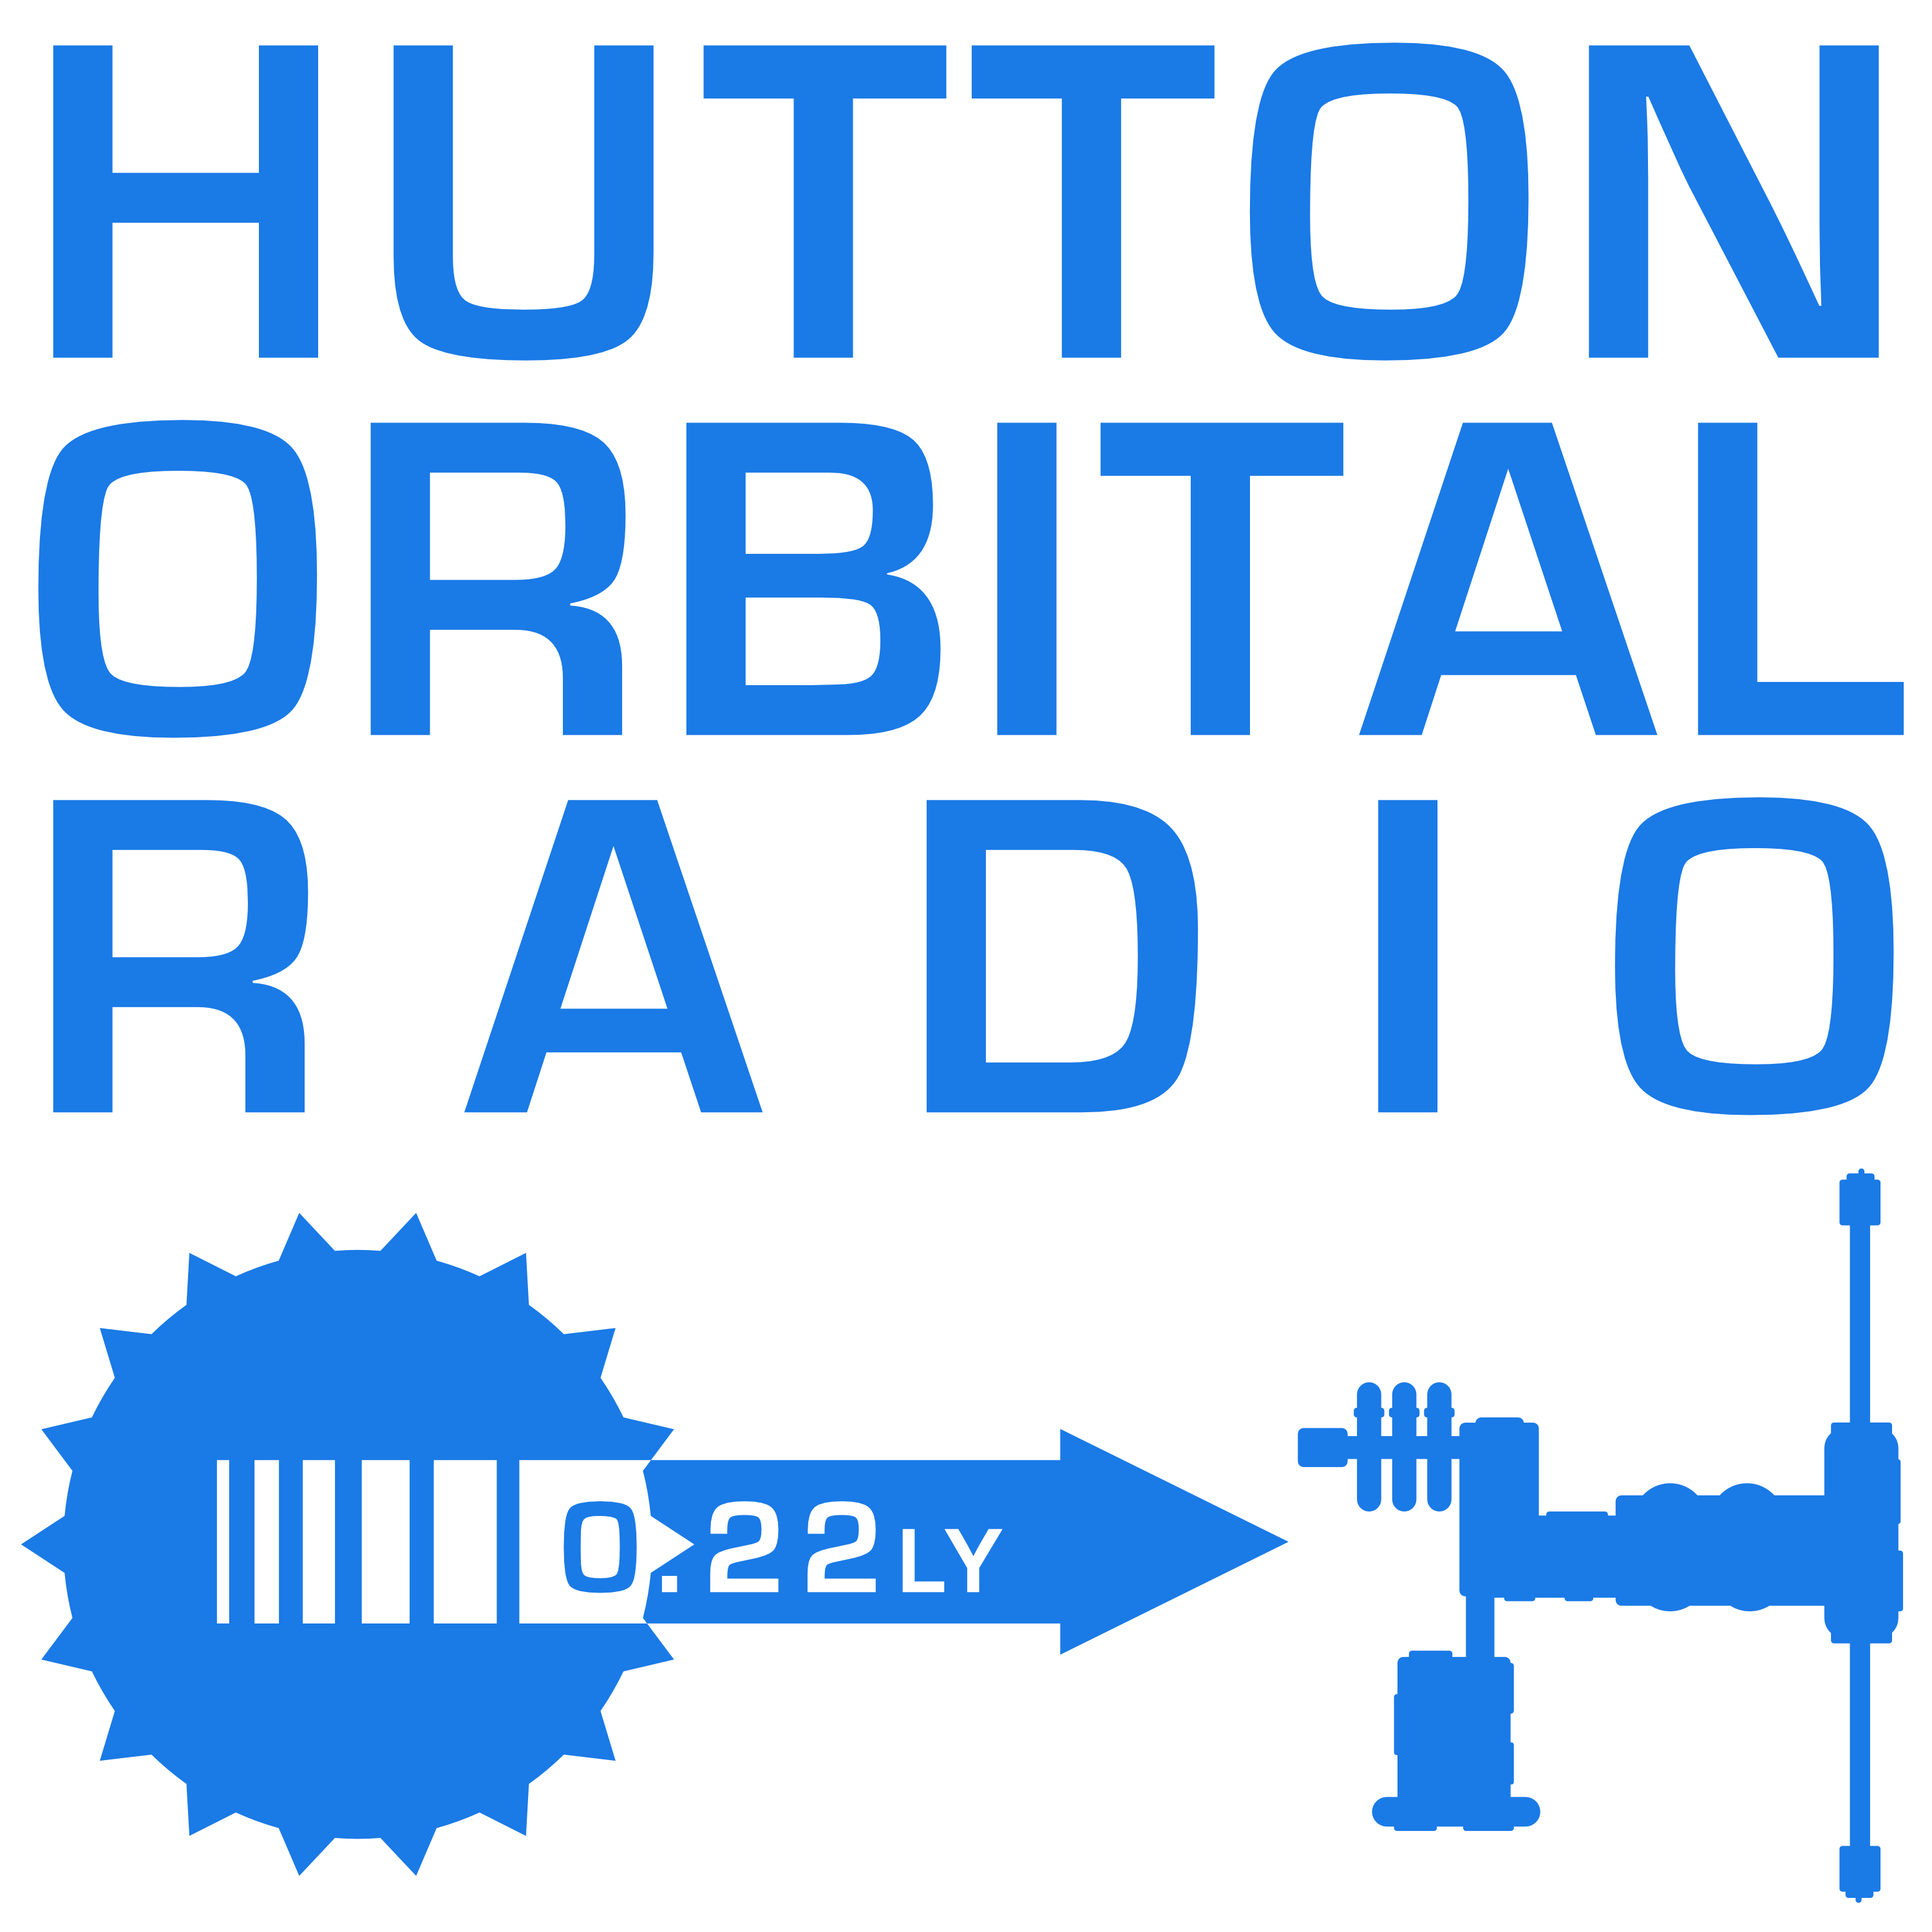 Hutton Orbital Radio